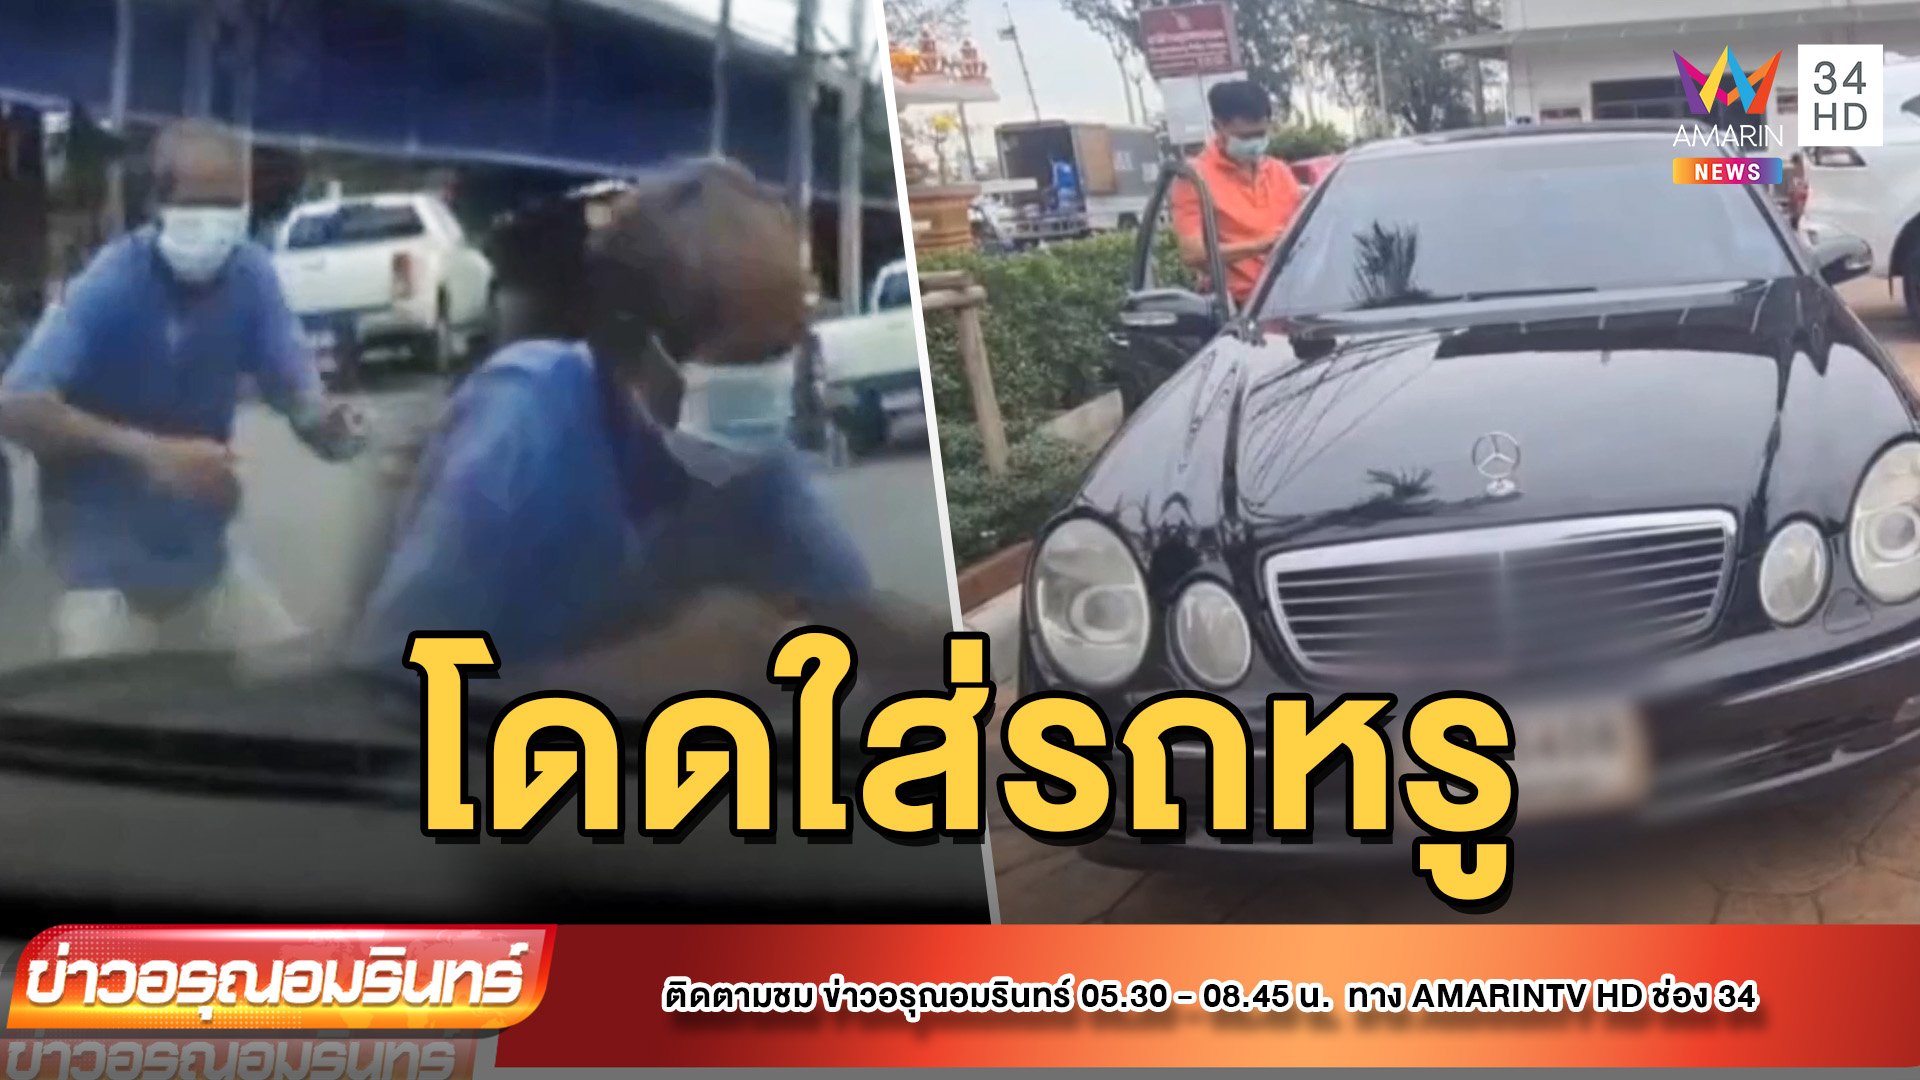 ชายสูงวัยกระโดดใส่หน้ารถหรู หวังเรียกค่าเสียหาย | ข่าวอรุณอมรินทร์ | 5 พ.ค. 65 | AMARIN TVHD34